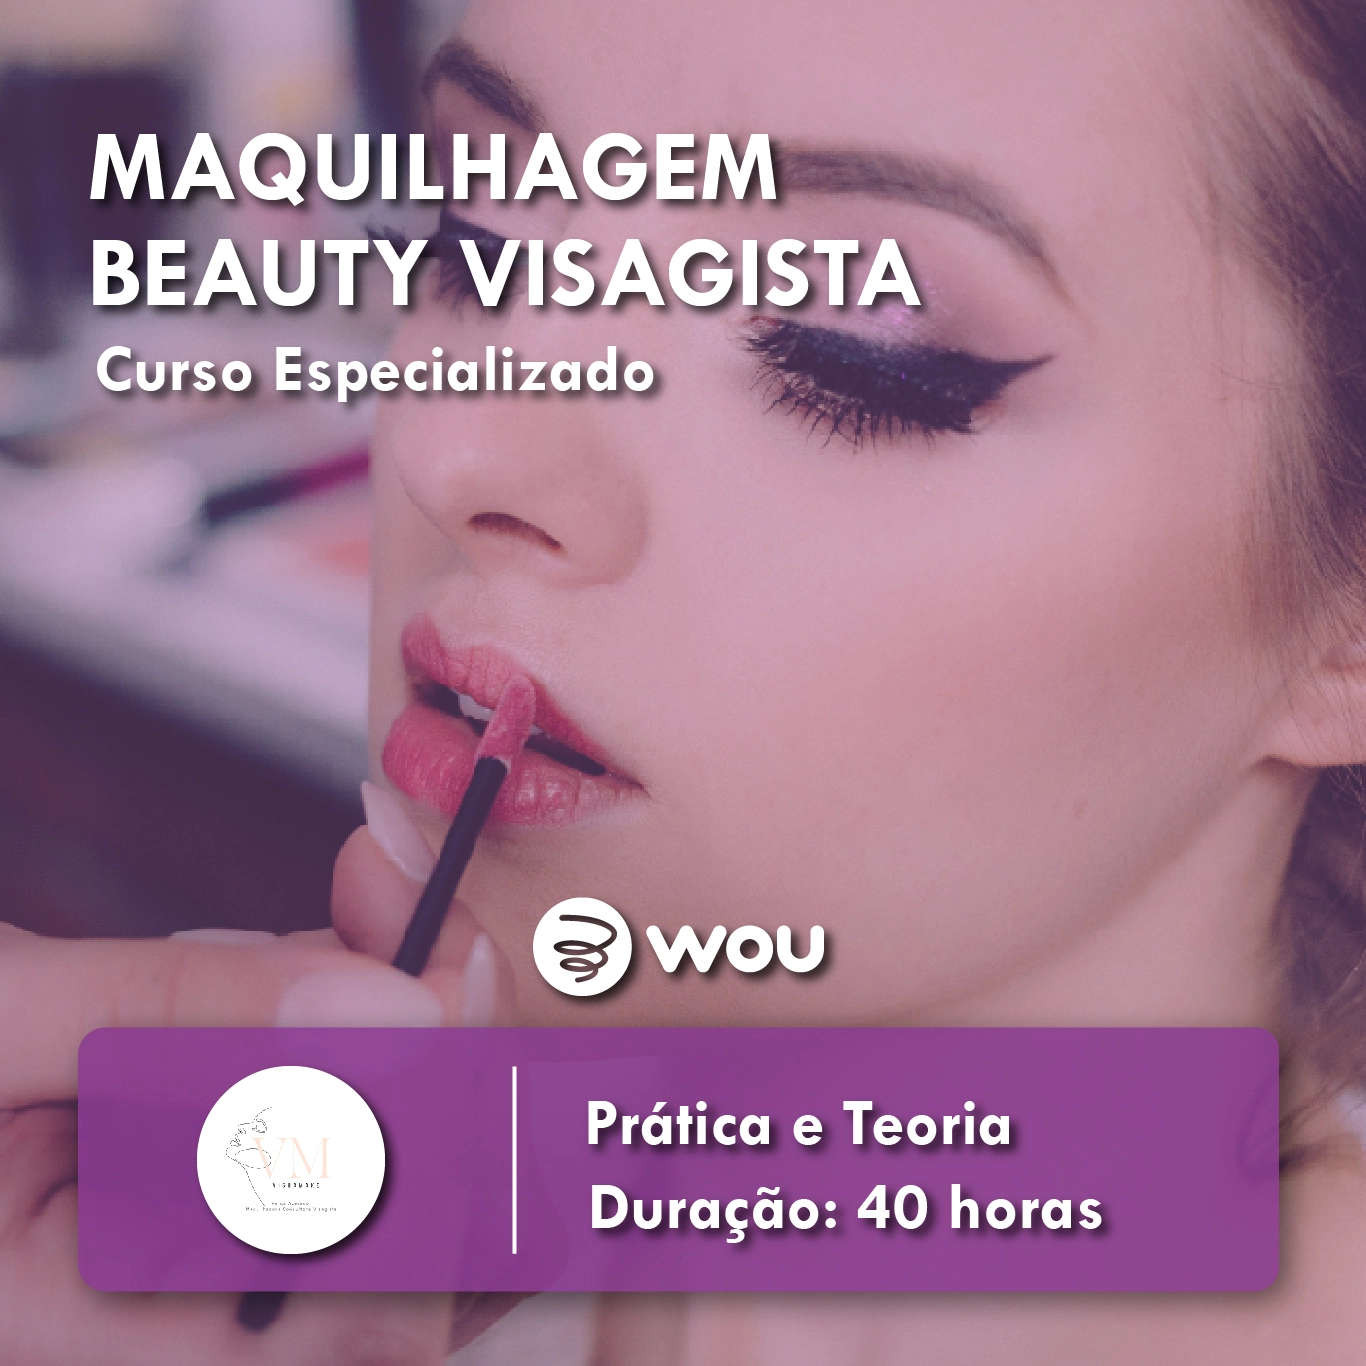 Curso de Maquilhagem Beauty Visagista